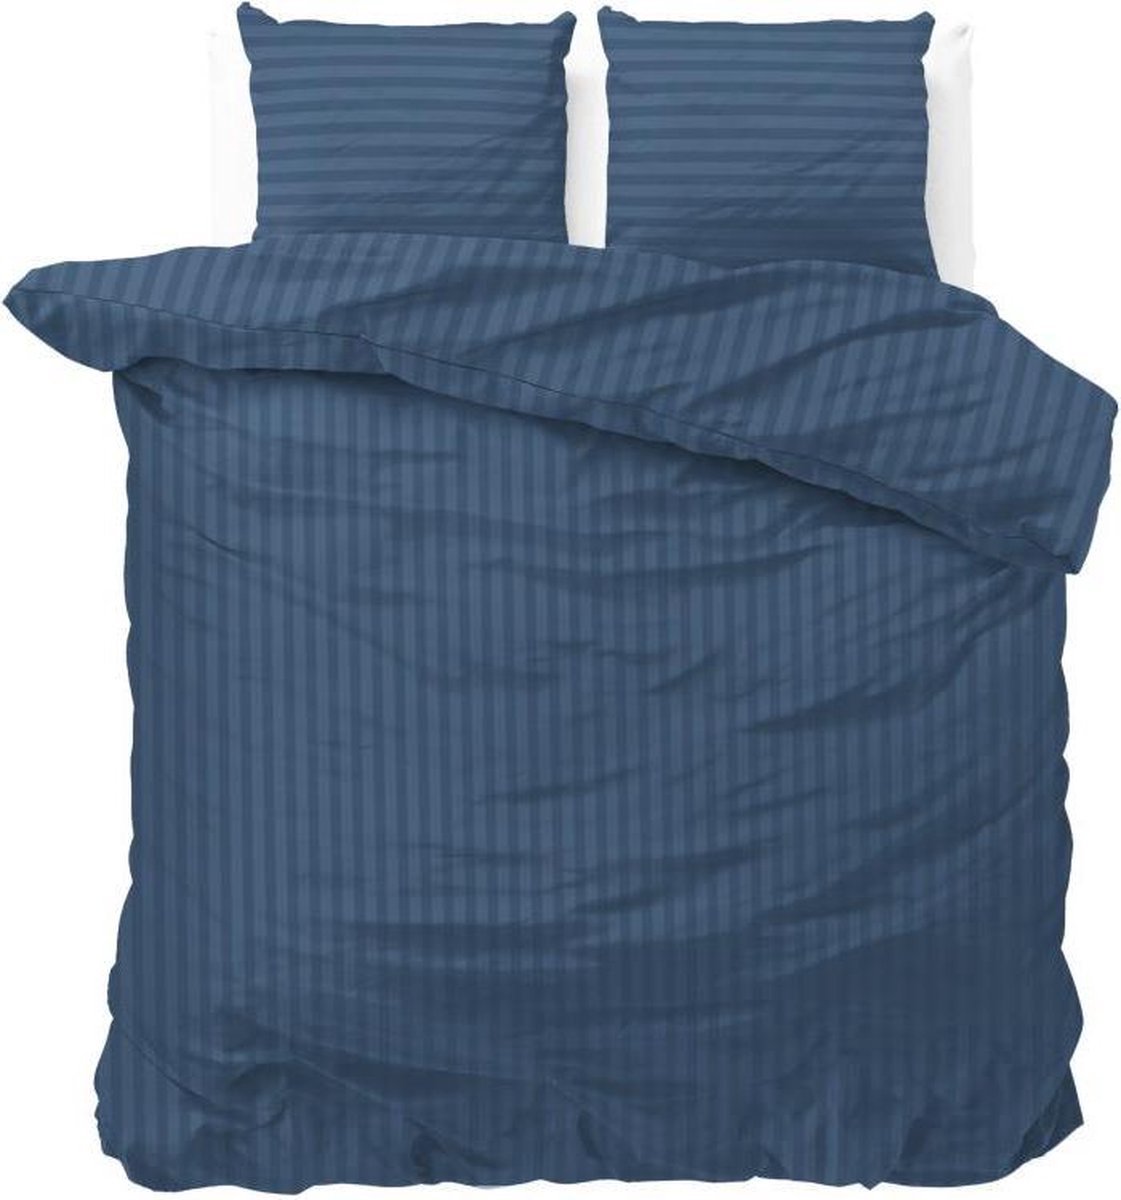 Lits-jumeaux dekbedovertrek (dekbed hoes) navy blauw / donkerblauw gestreept met fijne strepen / banen 240 x 220 cm (beddengoed cadeau idee slaapkamer)